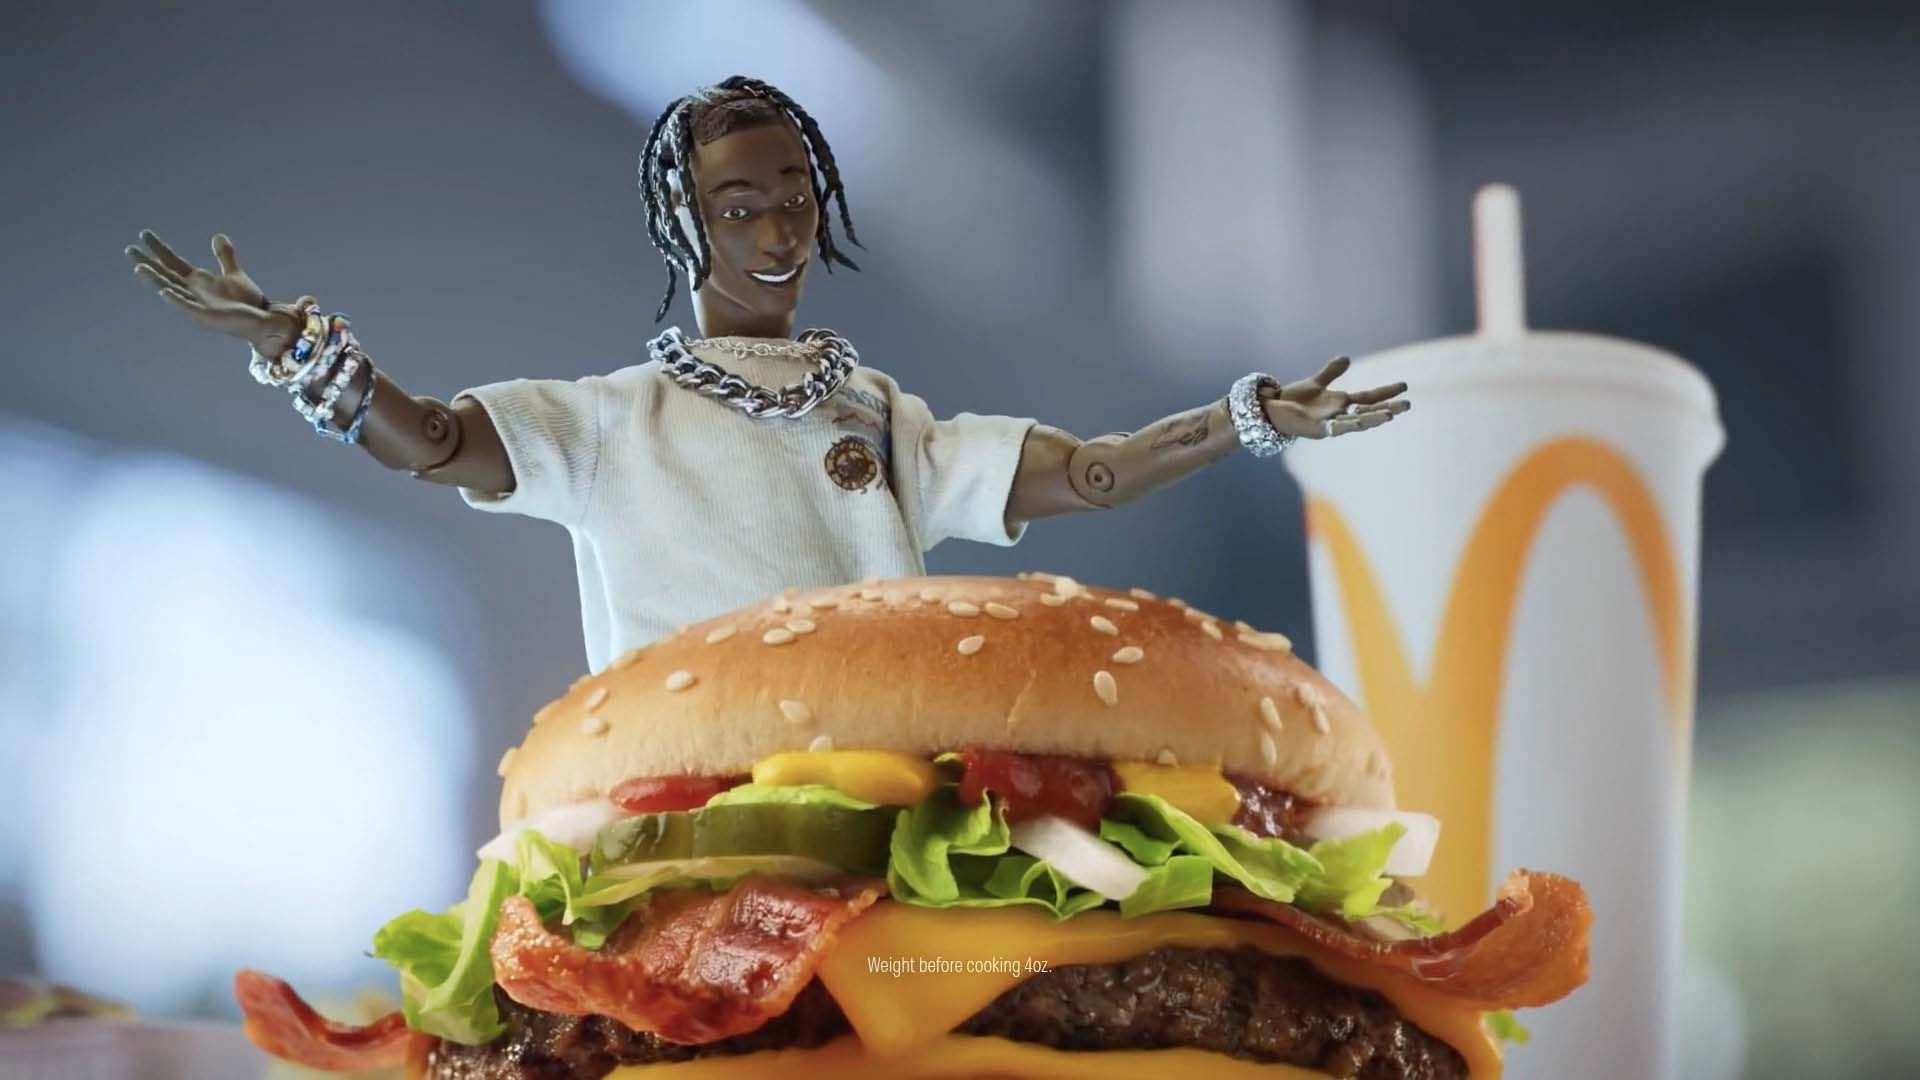 Travis Scott and McDonald's: The new meme going around